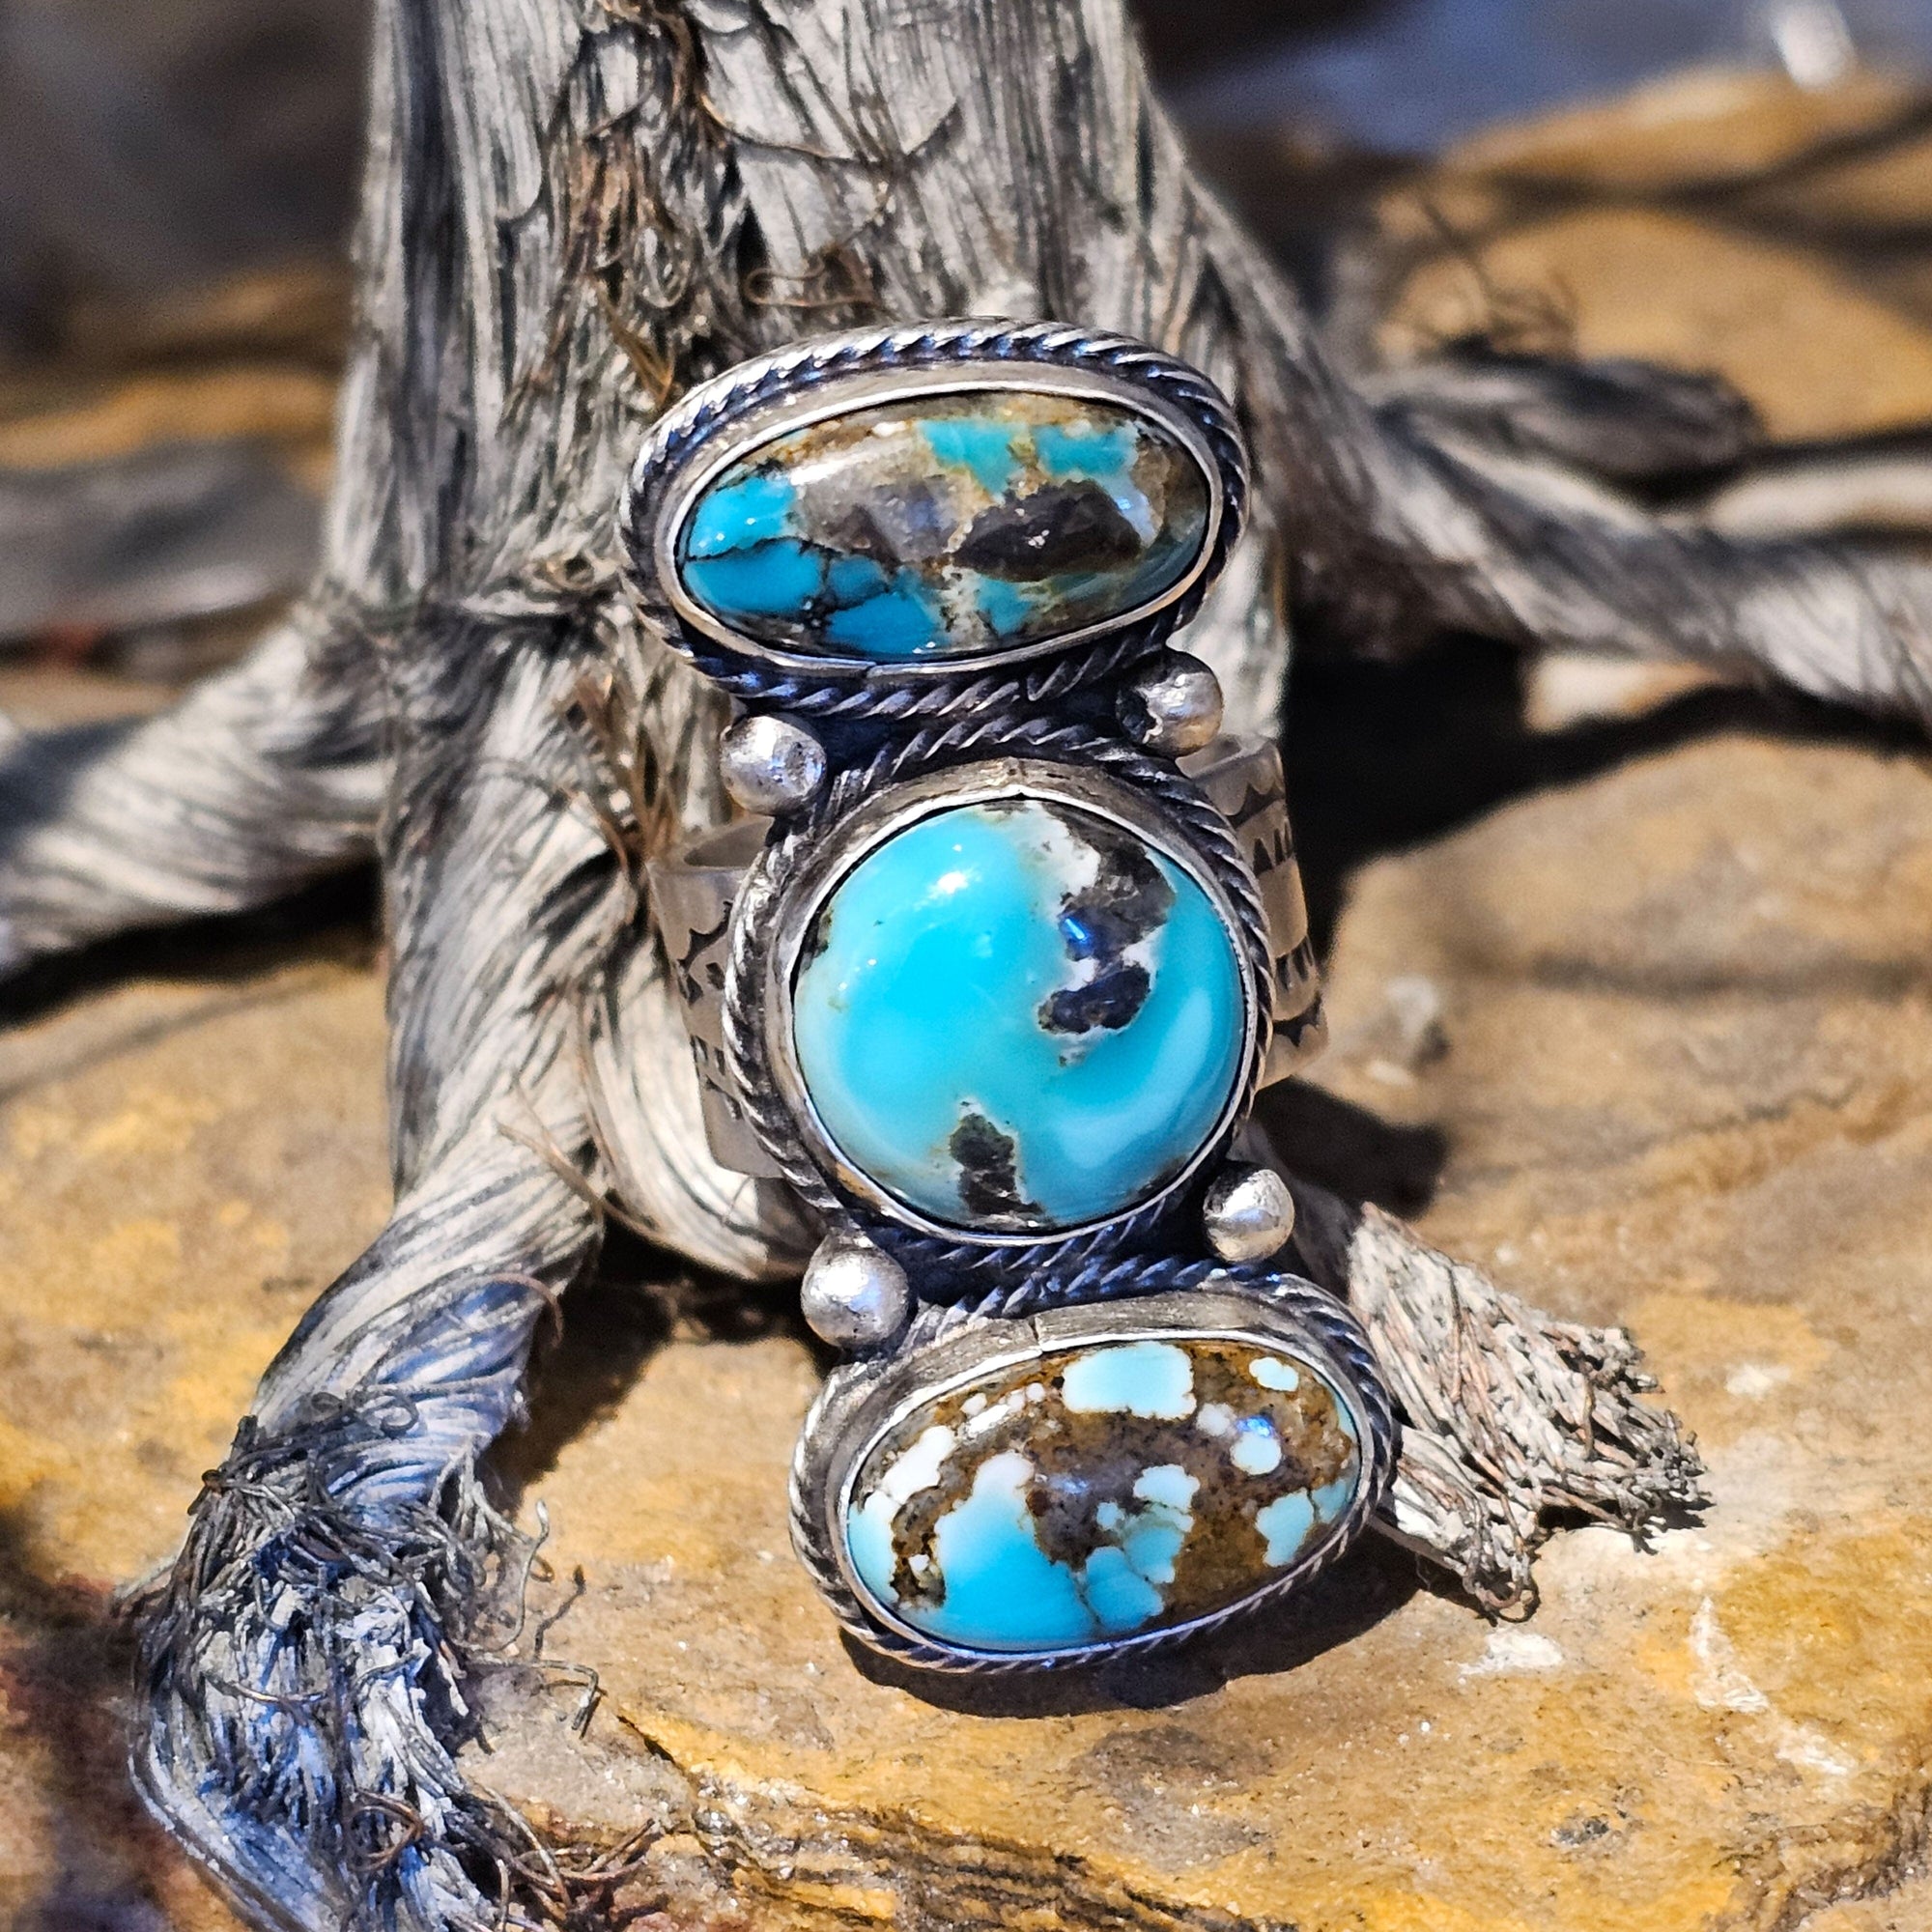 3 Stone Turquoise Ring - Size 9-3/4 - RSW21